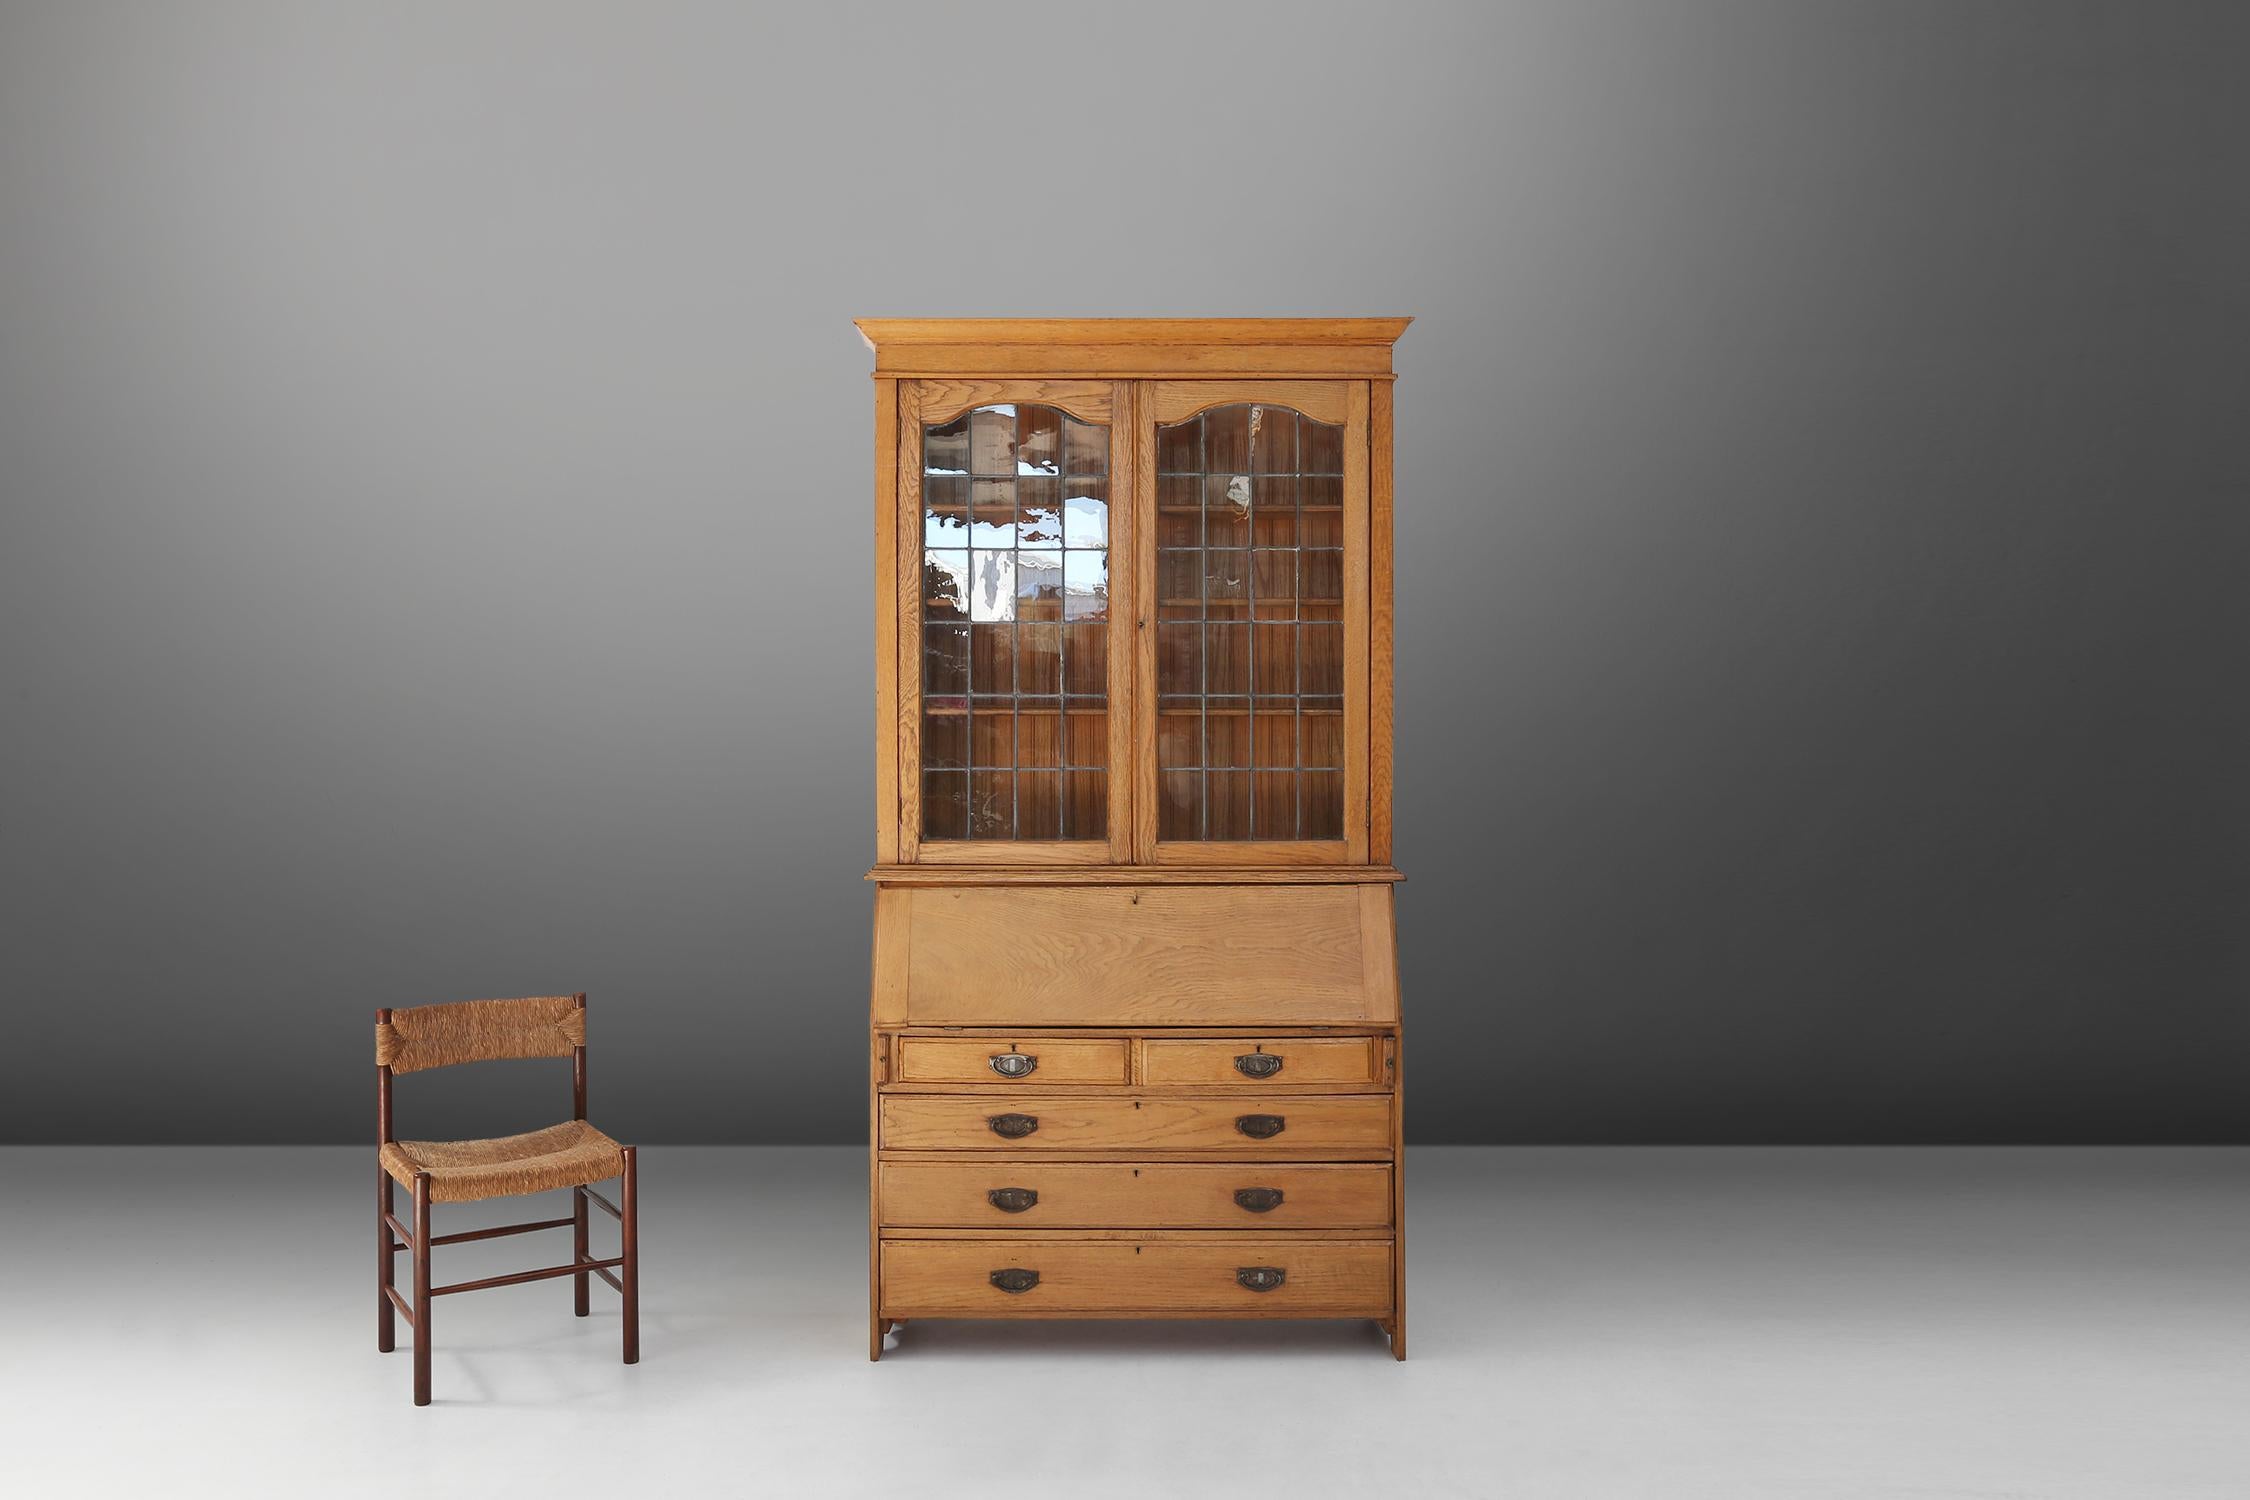 Dieses englische Sekretär-Bücherregal im Kunsthandwerksstil ist ein schönes Möbelstück, das sowohl Eleganz als auch Funktionalität zum Ausdruck bringt. Das Sekretariatsregal wurde um 1910 aus Eiche gefertigt, einem dauerhaften und warmen MATERIAL,